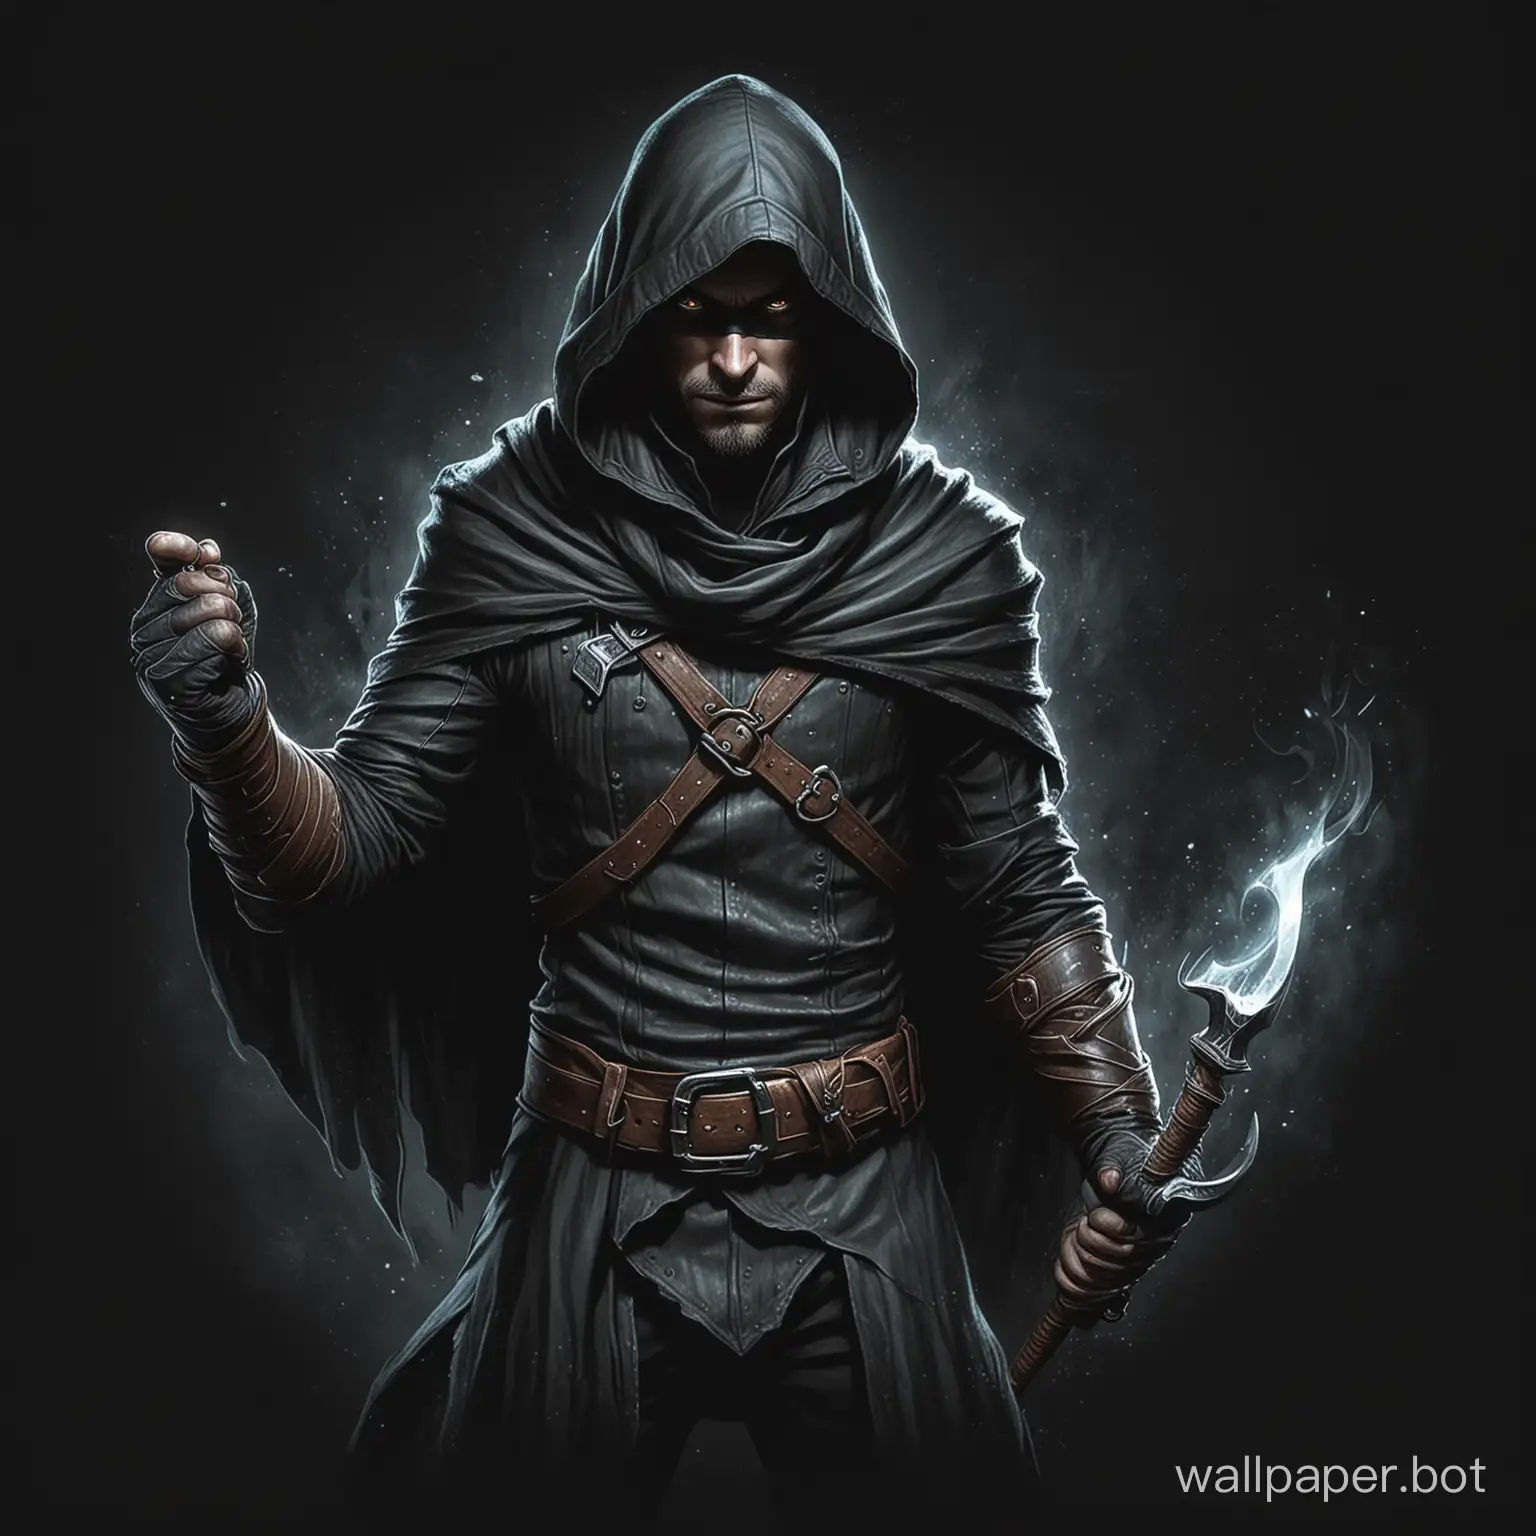 Draw a fantasy thief on a black background